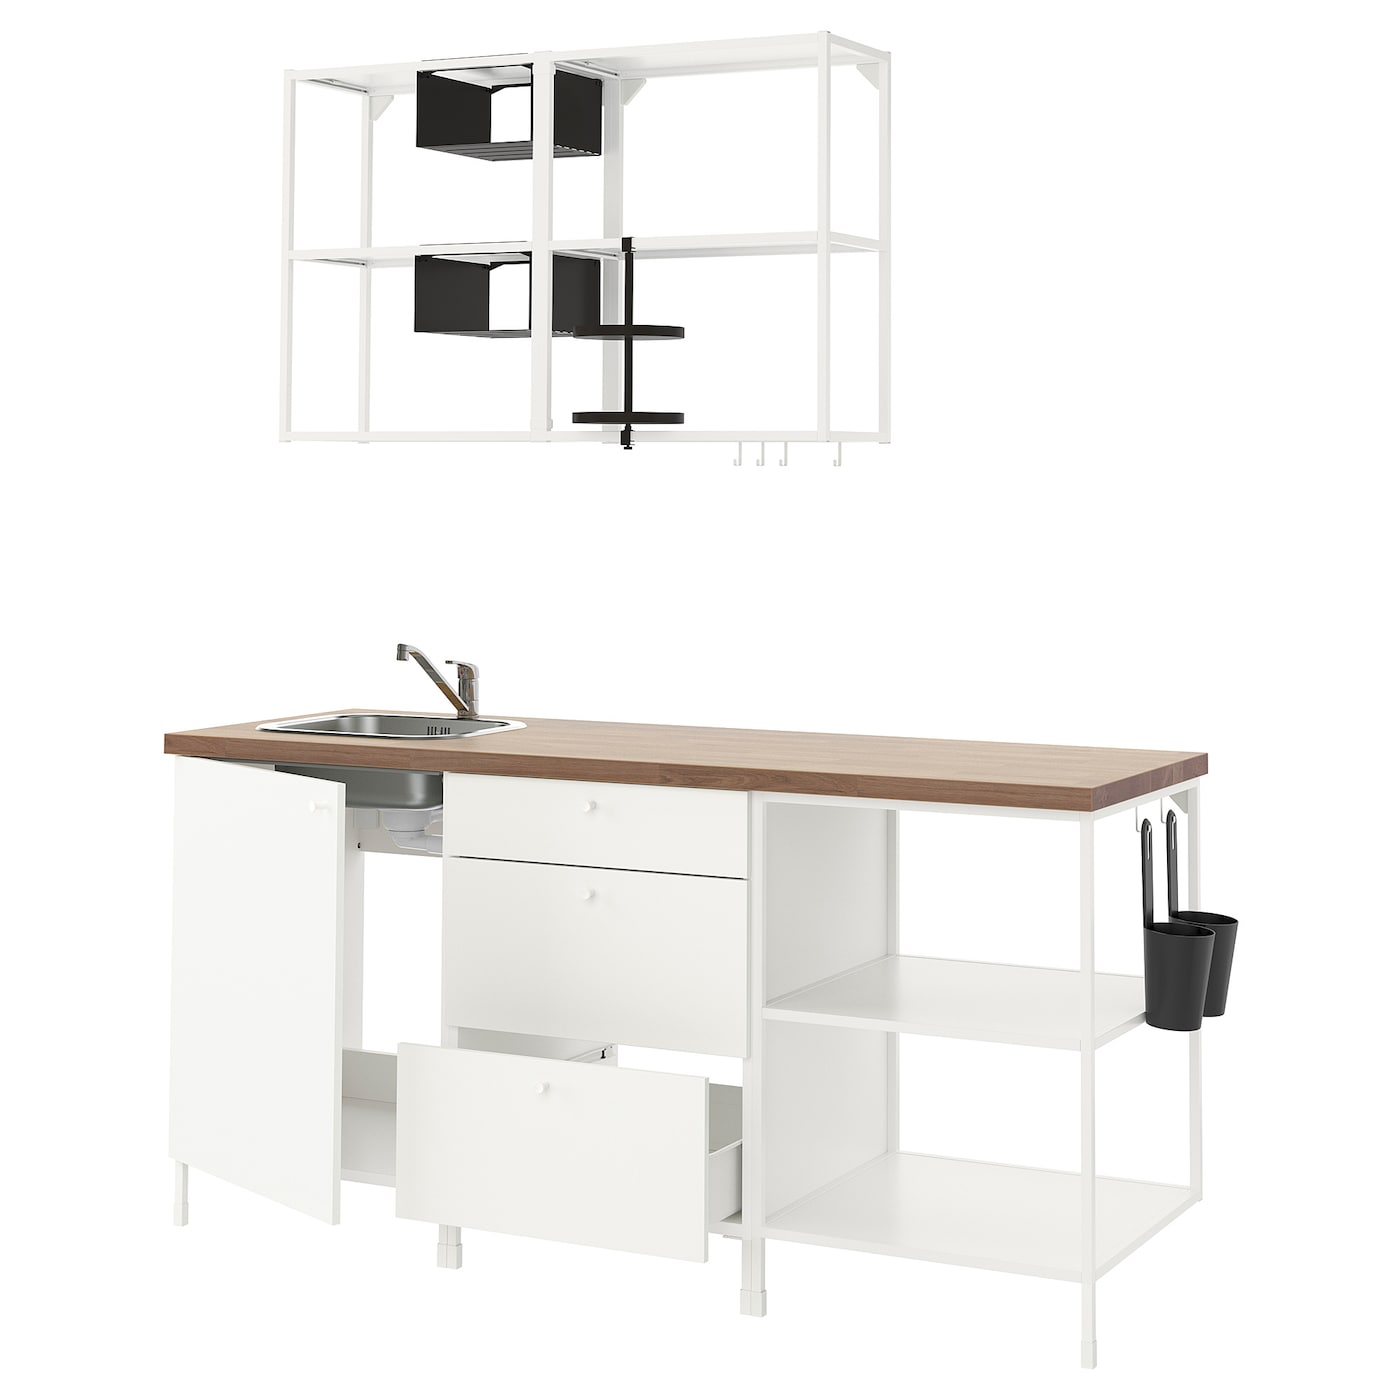 Кухонная комбинация для хранения - ENHET  IKEA/ ЭНХЕТ ИКЕА, 183х63,5х222 см, белый/черный